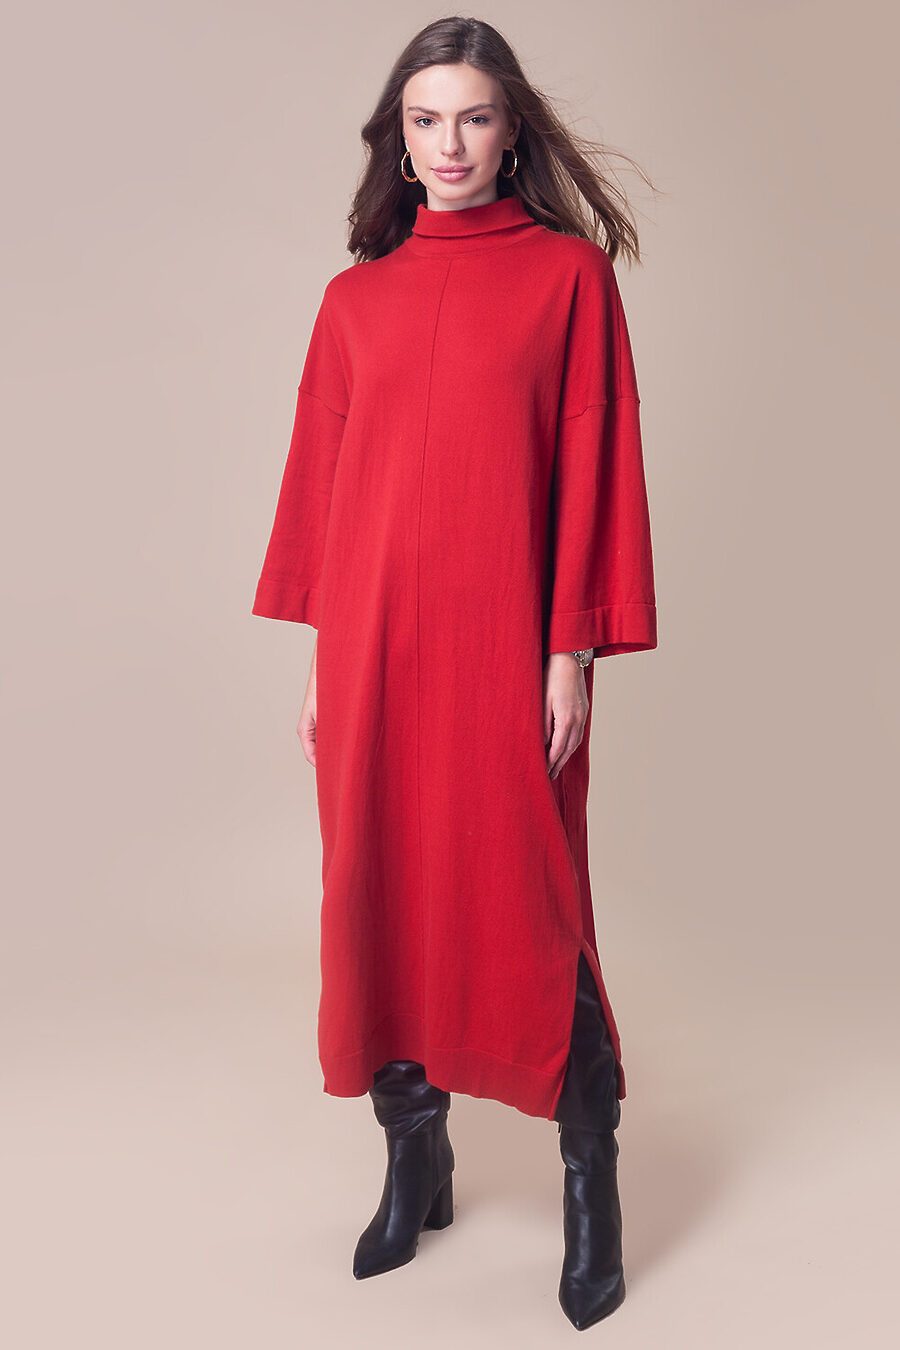 Платье для женщин VILATTE 795703 купить оптом от производителя. Совместная покупка женской одежды в OptMoyo